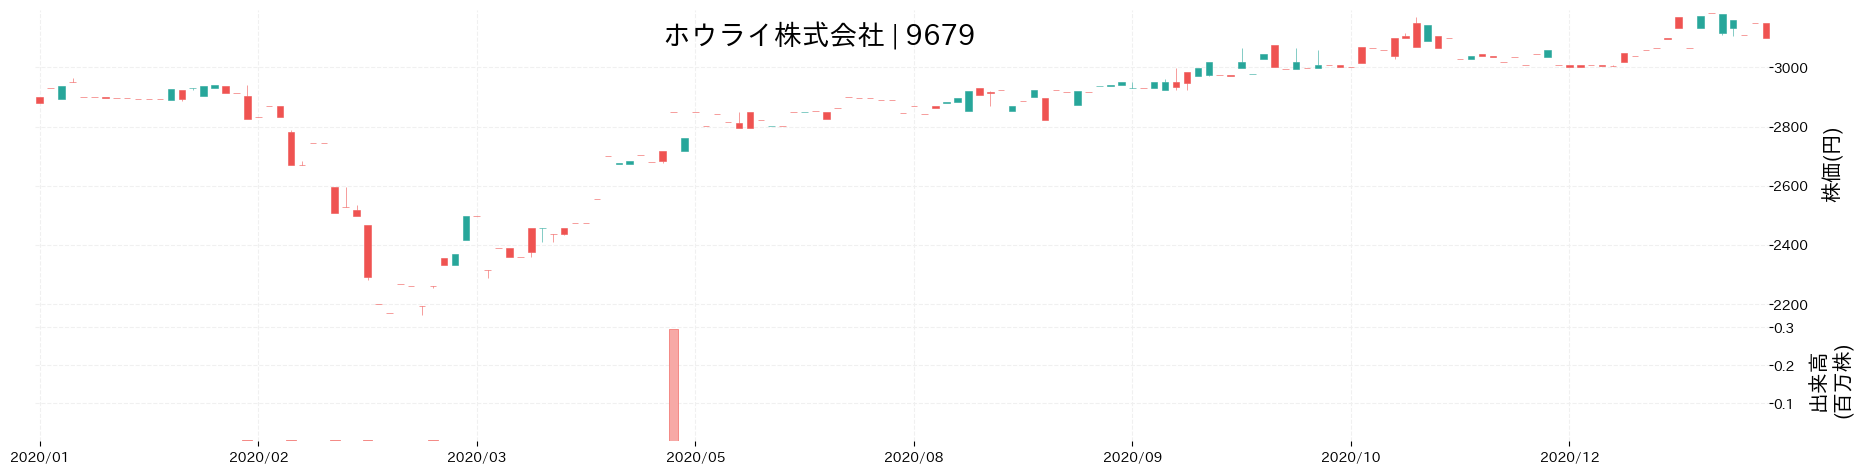 ホウライの株価推移(2020)